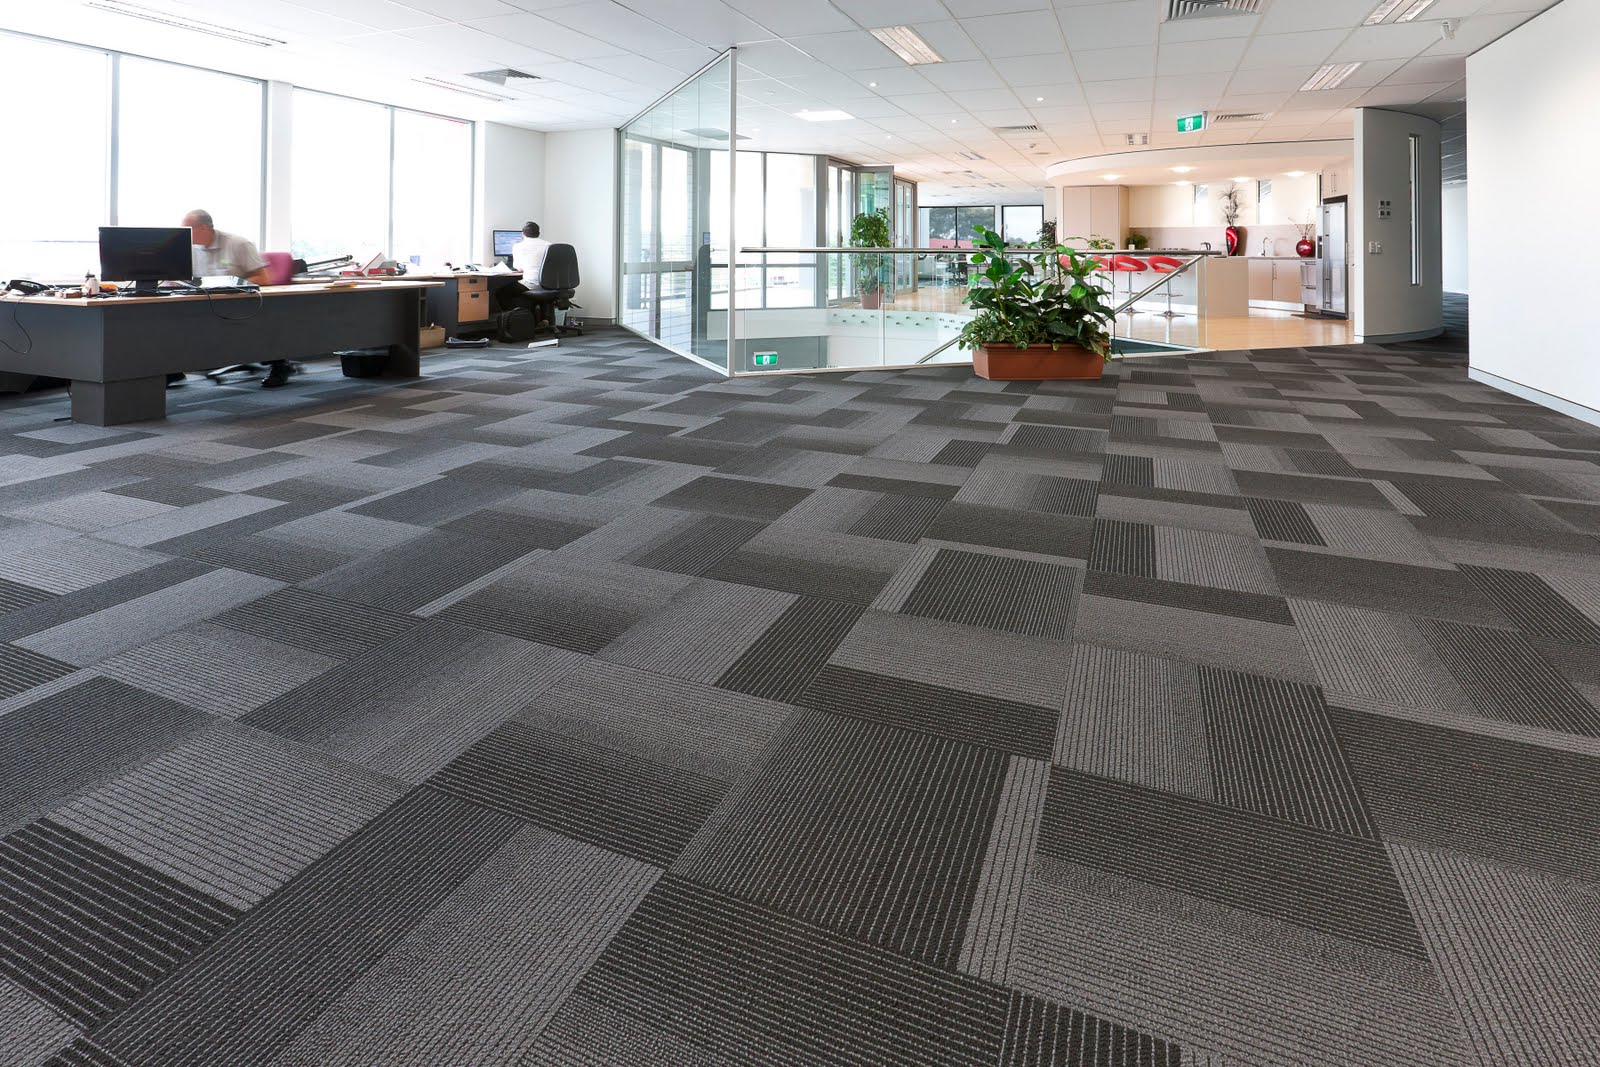 Floor Carpet